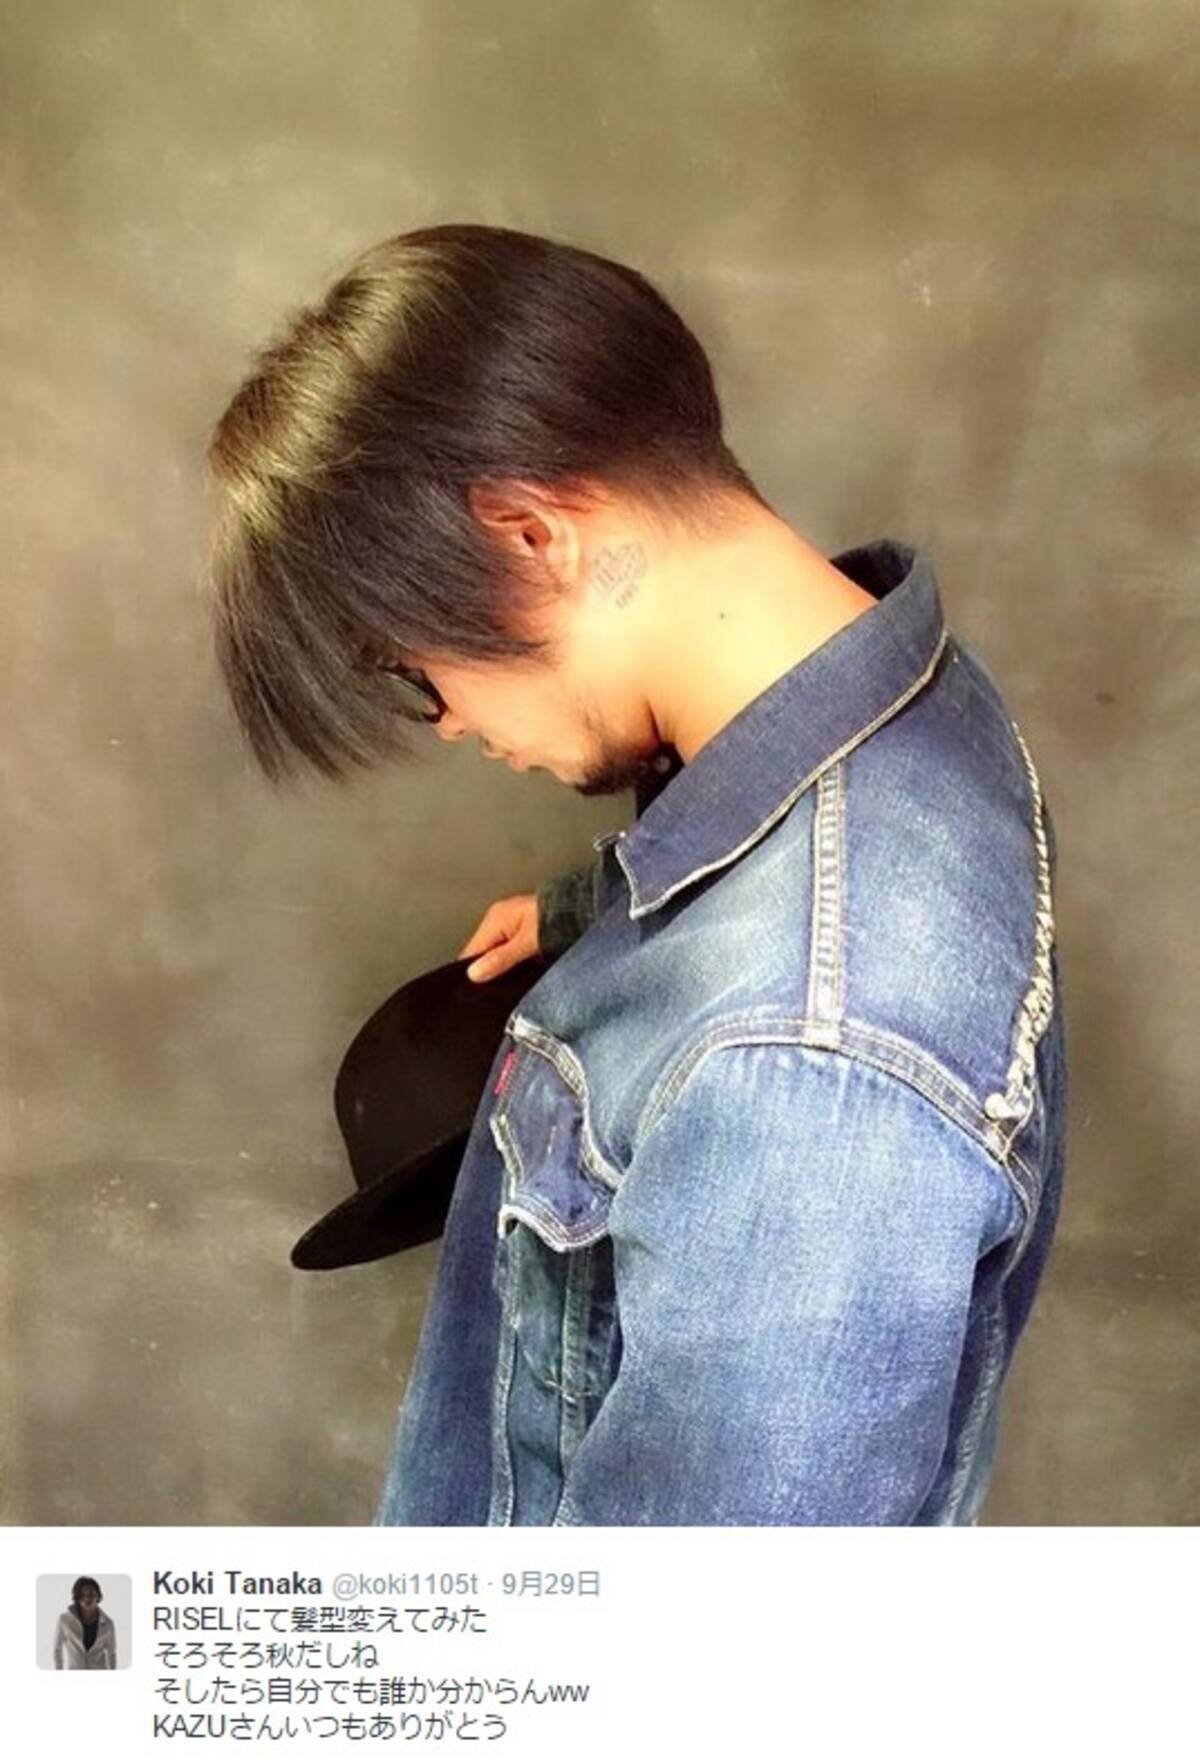 田中聖 髪型変えて 進撃の巨人 リヴァイ コスを計画中 2015年10月